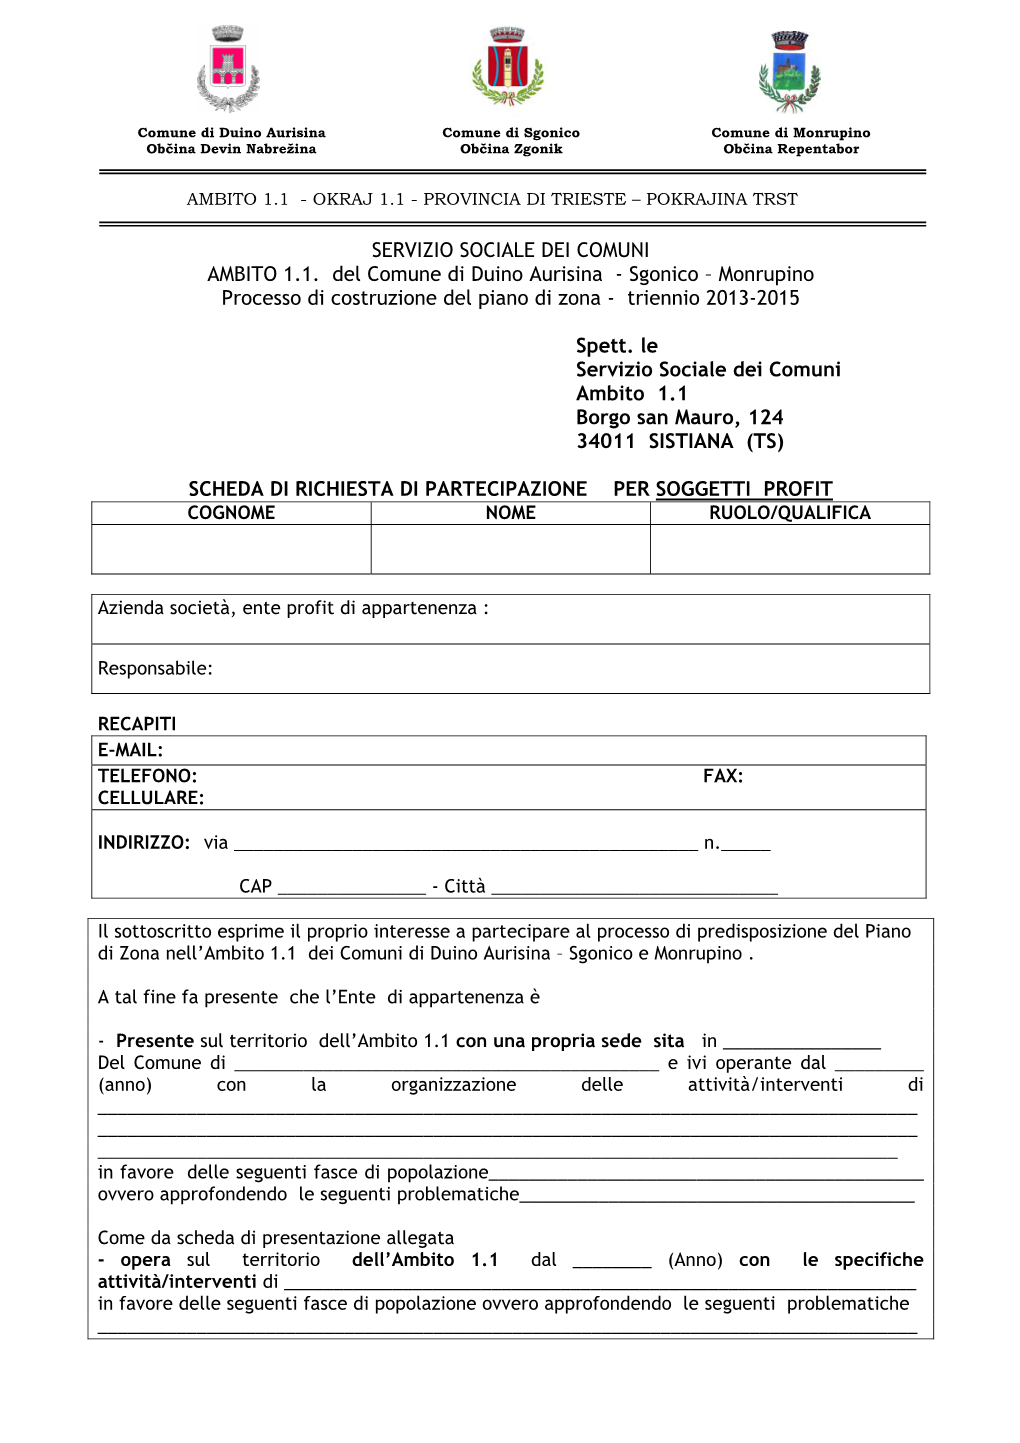 SERVIZIO SOCIALE DEI COMUNI AMBITO 1.1. Del Comune Di Duino Aurisina - Sgonico – Monrupino Processo Di Costruzione Del Piano Di Zona - Triennio 2013-2015